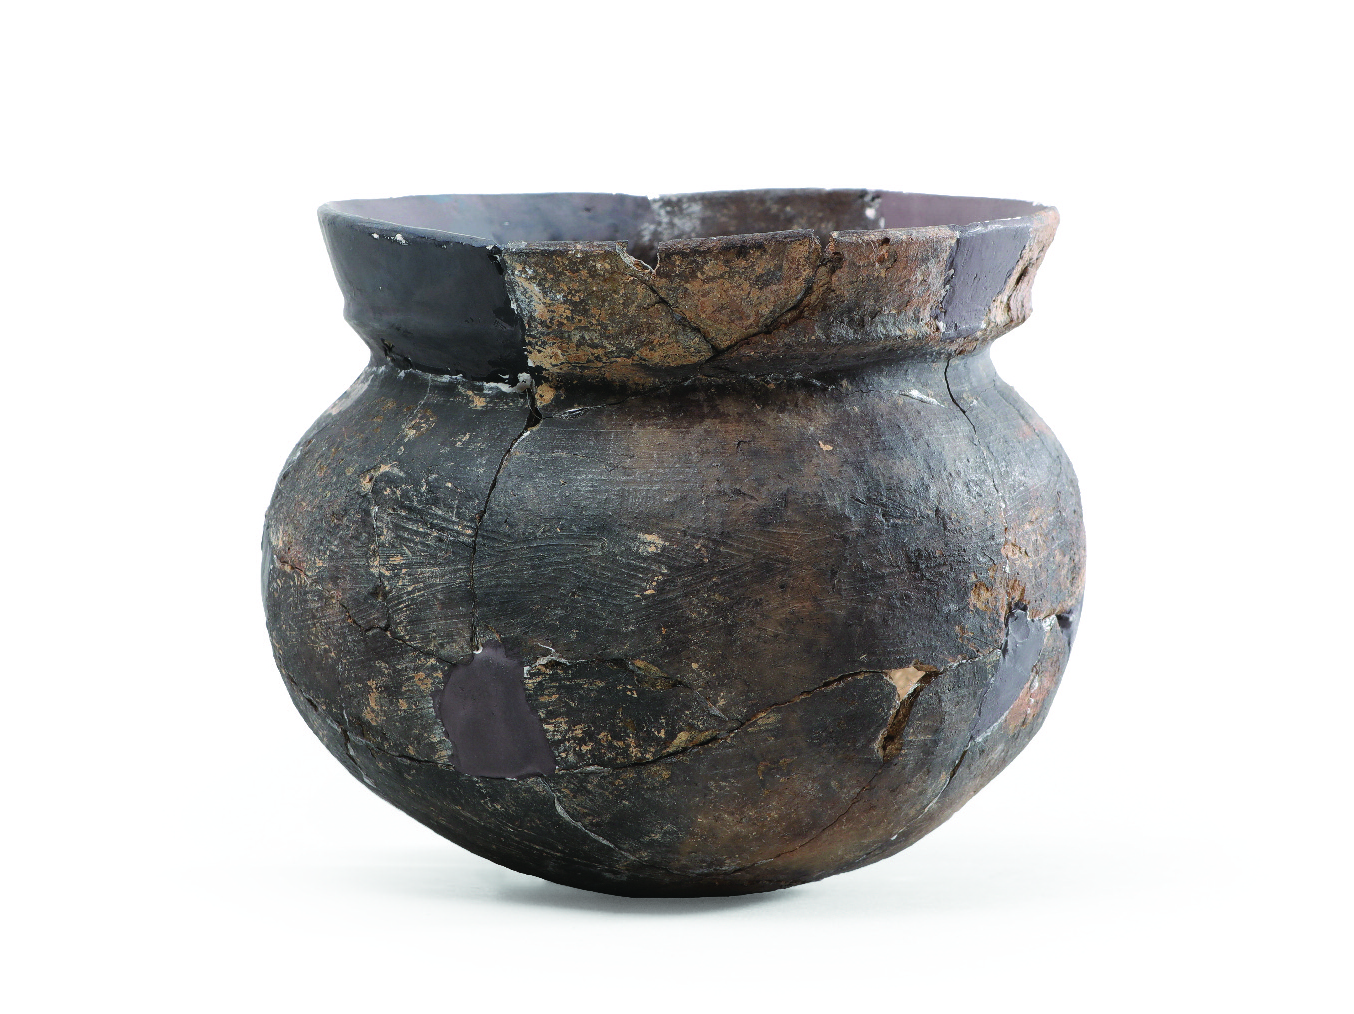 왜인들이 가져온 일본산 그릇... 부산은 고대부터 국제교역항_썸네일